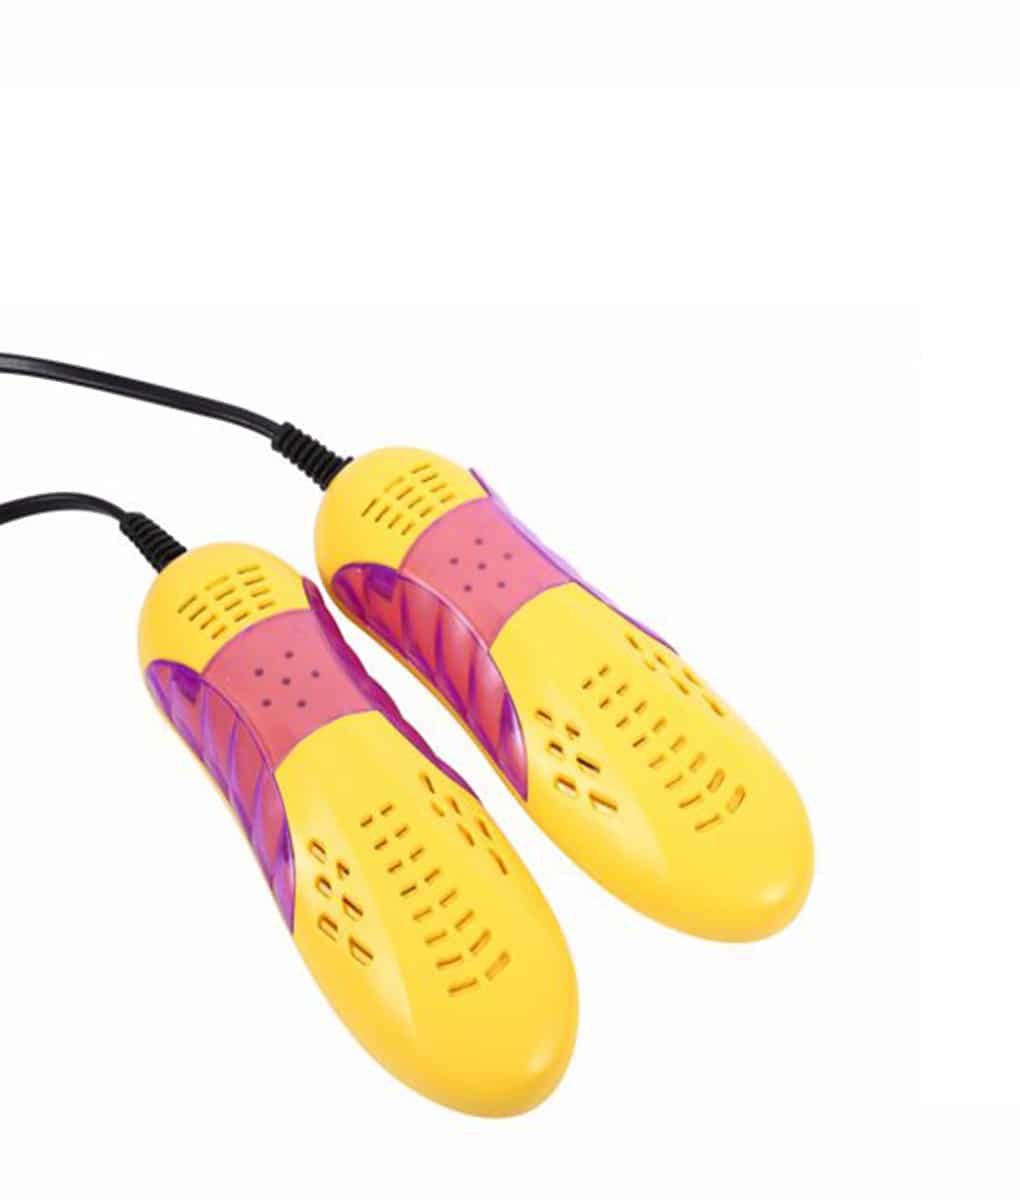 Violet Light Shoe Dryer Heater Foot Protector Boot Odor Deodorant Dehumidifier 